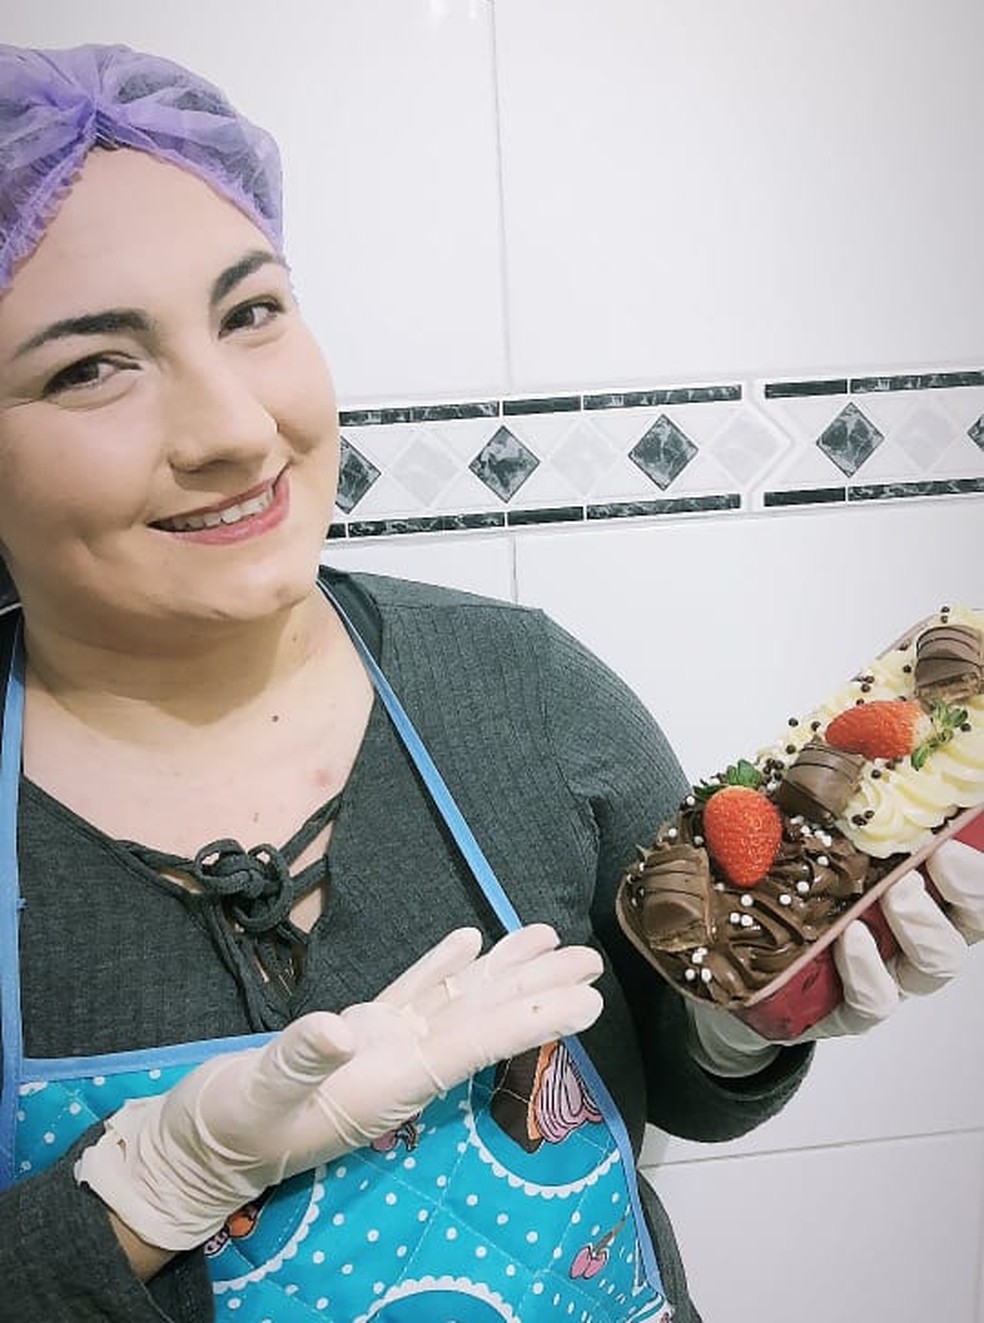 Ângela passou a fazer doces depois que perdeu o emprego durante a pandemia em Marília — Foto: Arquivo pessoal/Ângela Oliveira